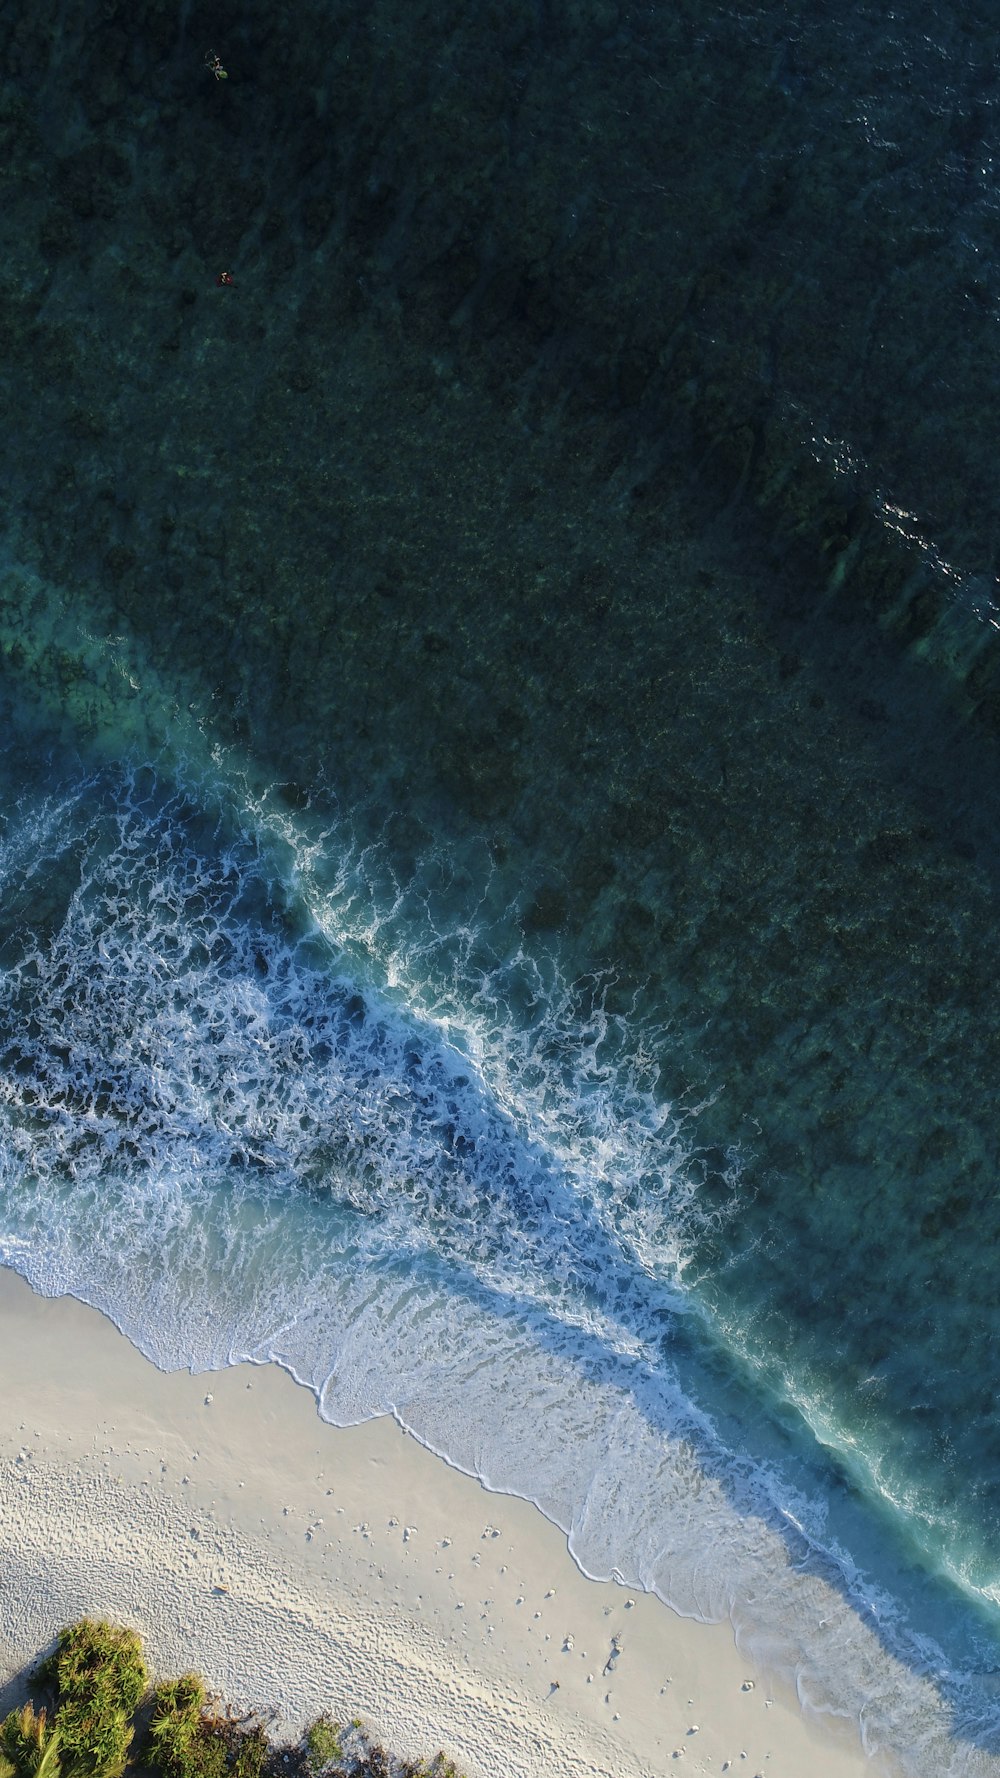 turchese calma onda del mare che spruzzi sulla spiaggia di sabbia bianca fotografia aerea